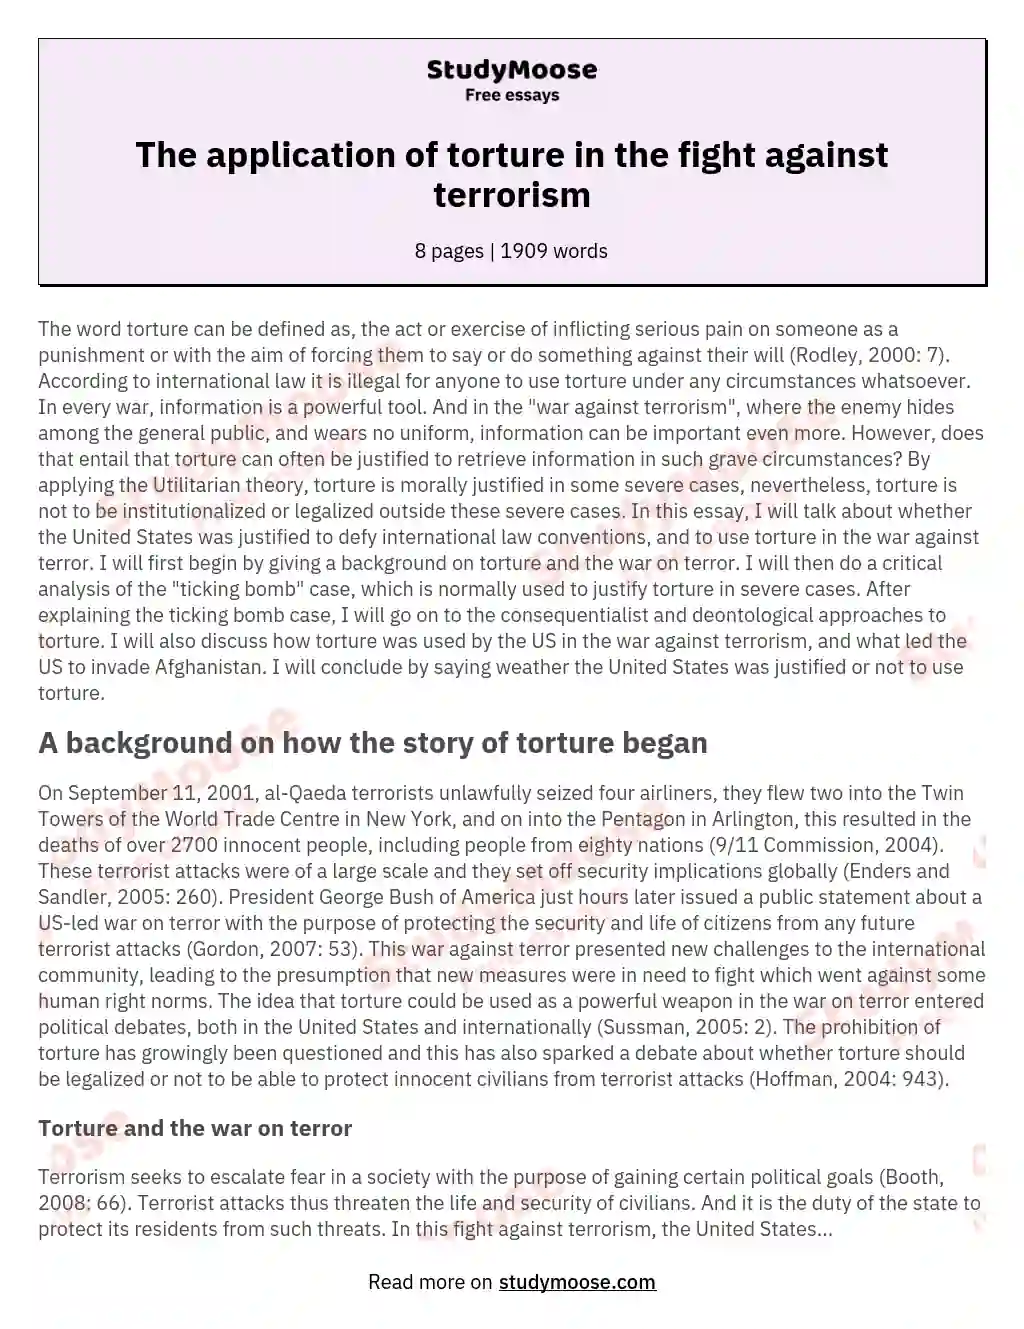 fight against terrorism essay